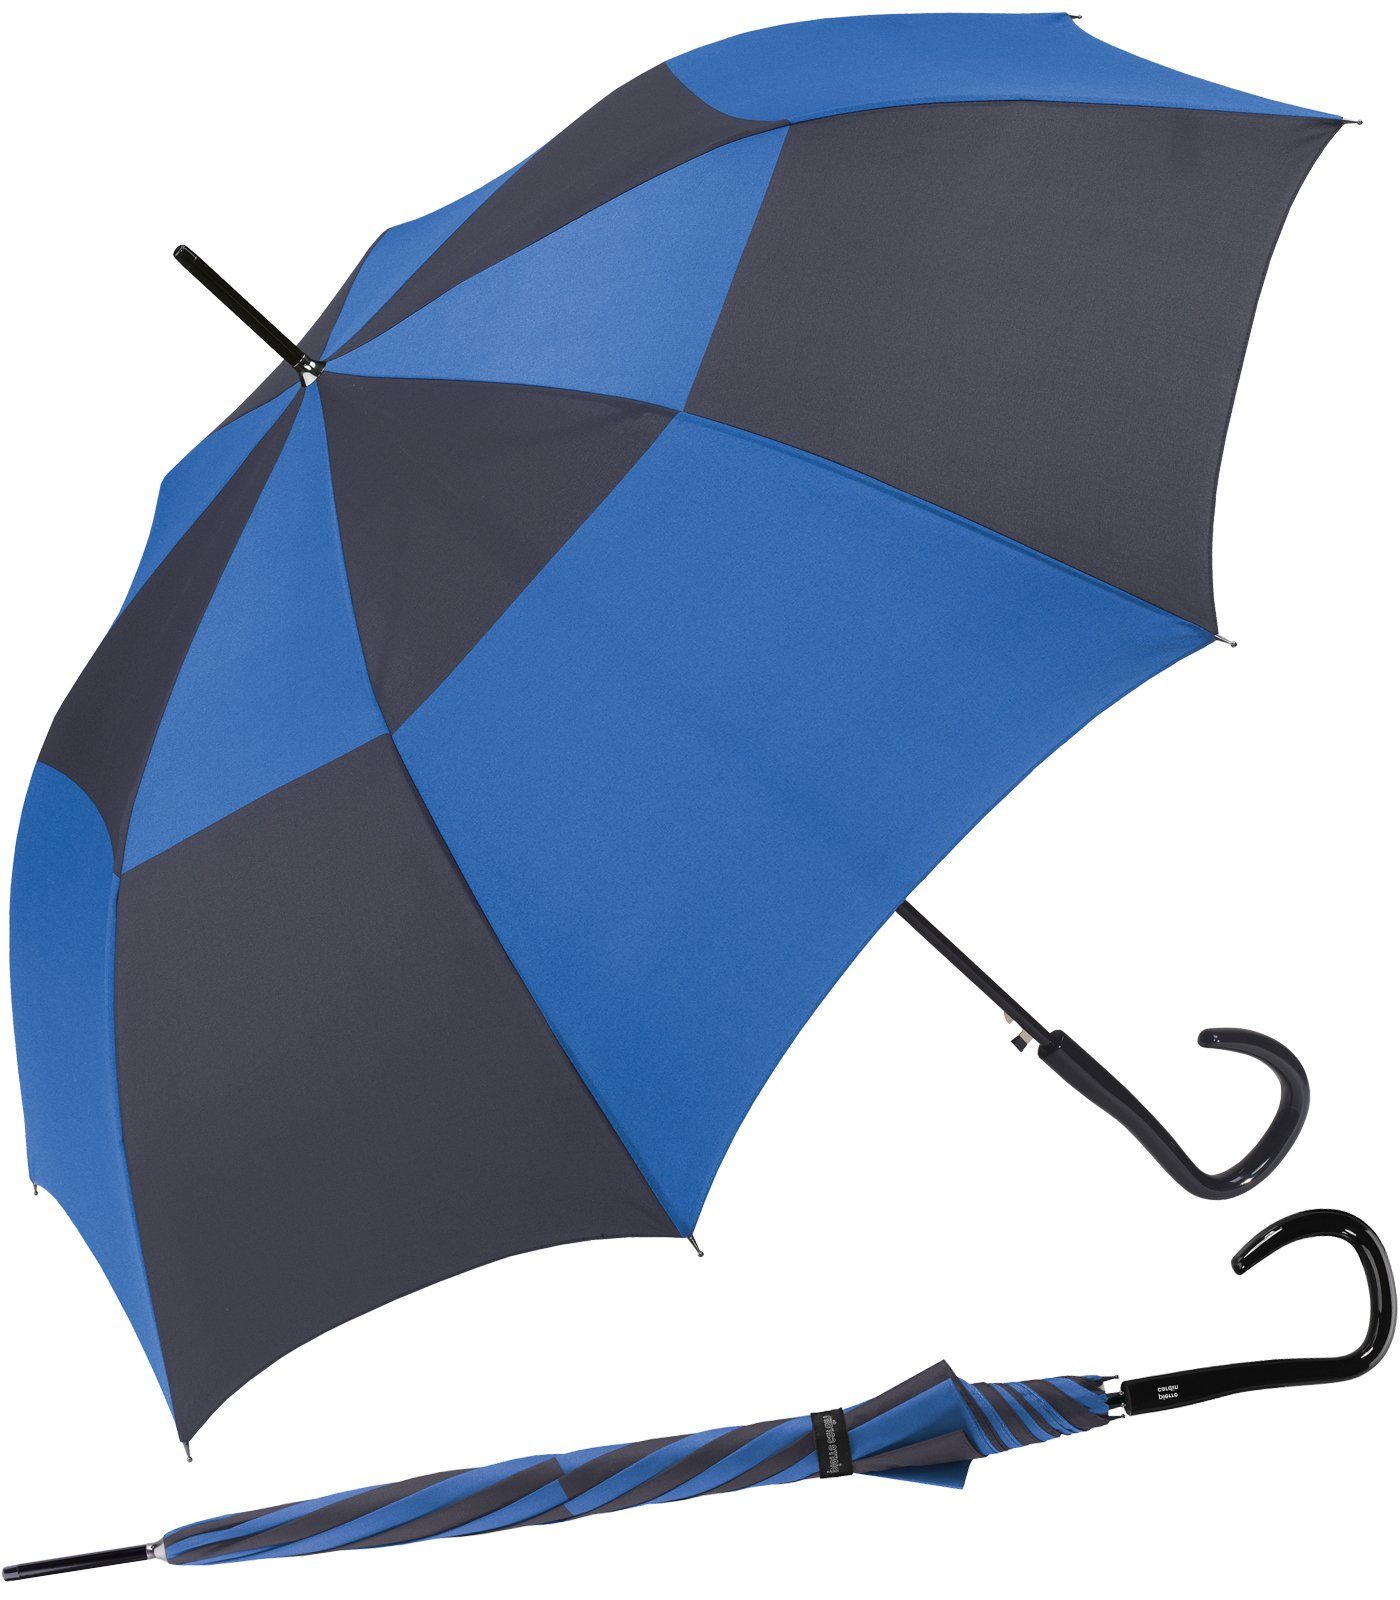 Kontraste Damen-Regenschirm Langregenschirm mit Pierre Schirm Cardin starke Auf-Automatik, auf einem eleganten blau-schwarz großer